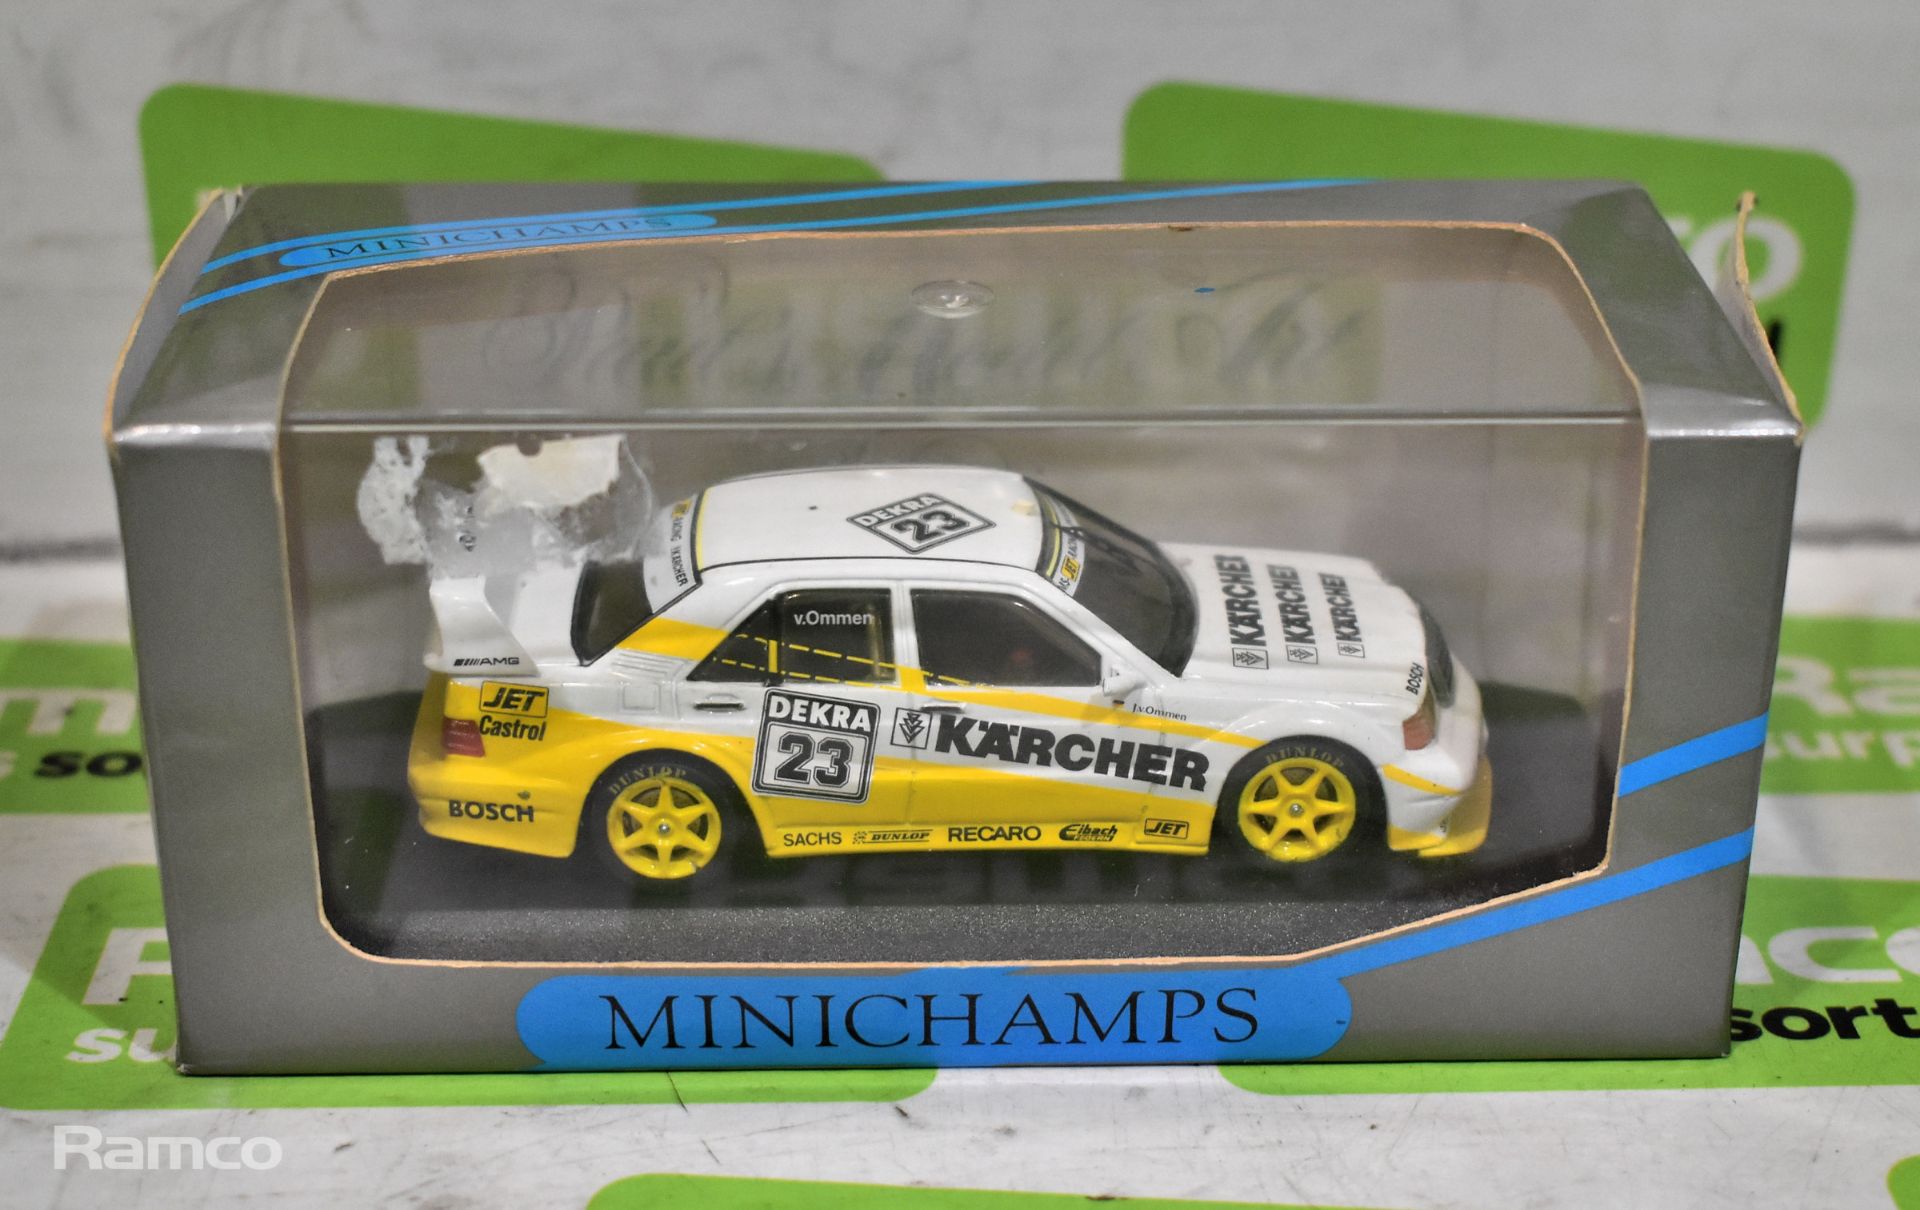 Minichamps Paul’s Model Art Mercedes 190 E Evo 2 – Team: MS-Karcher - v. Ommen – 1:43 metal model